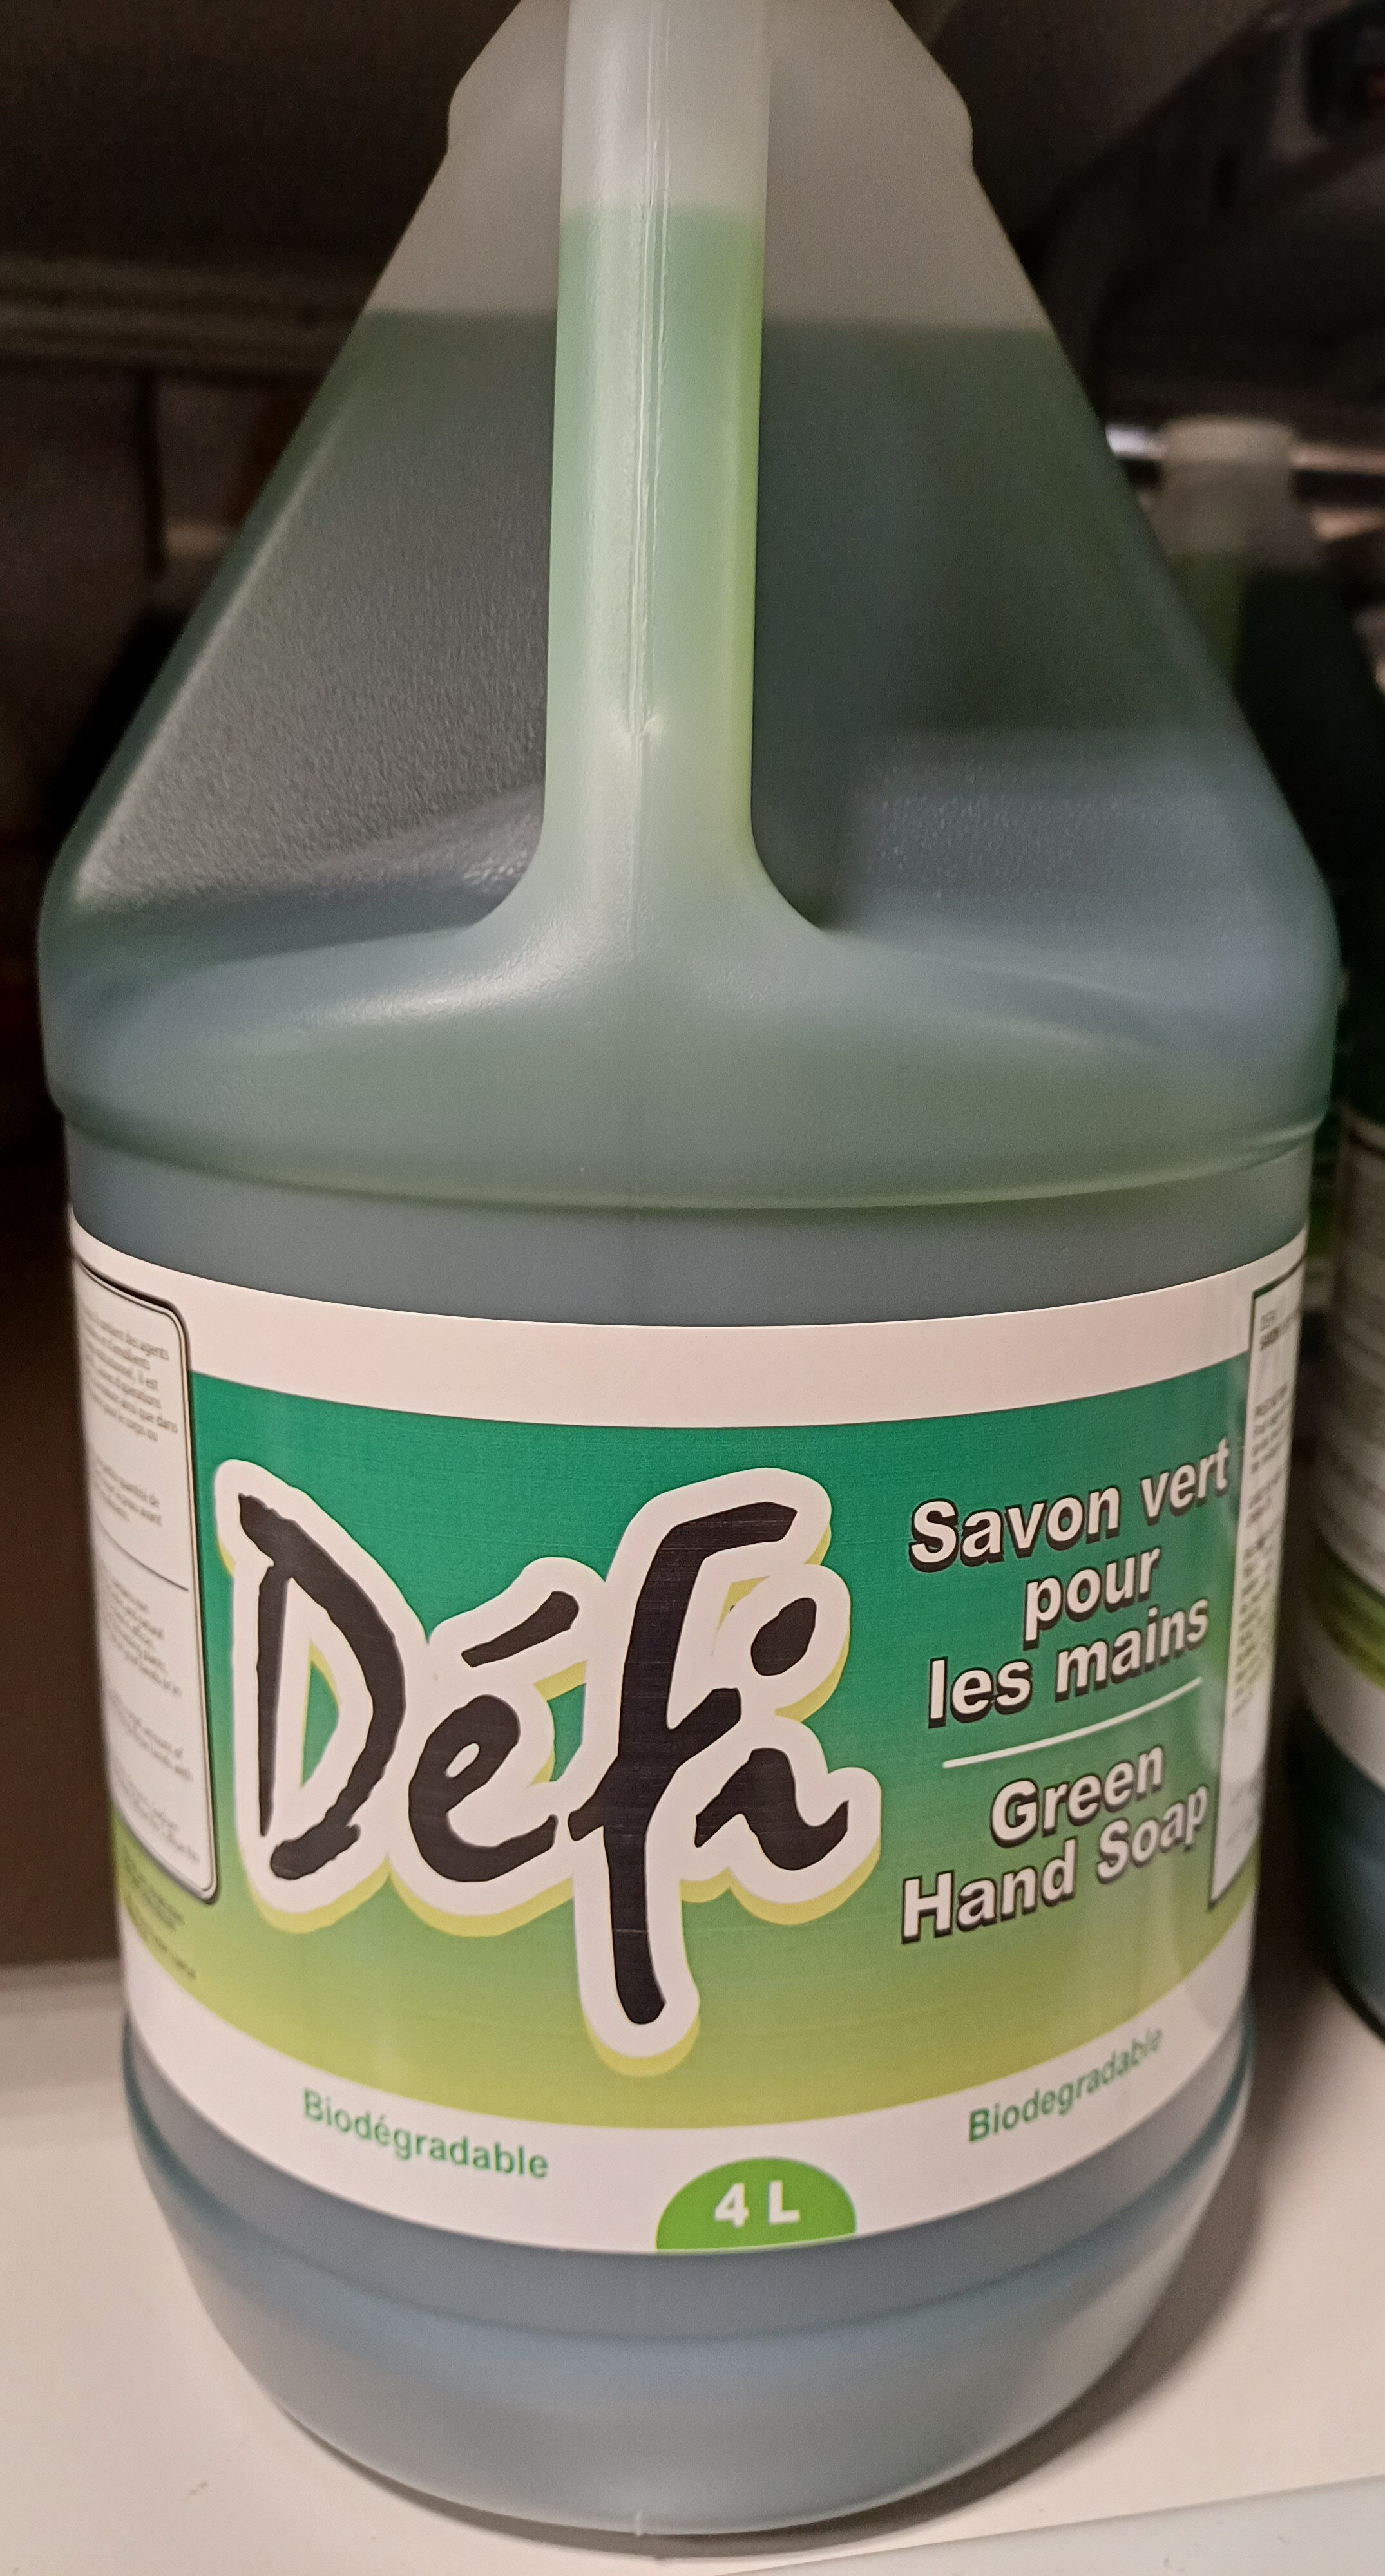 savon vert pour les mains - Product - fr